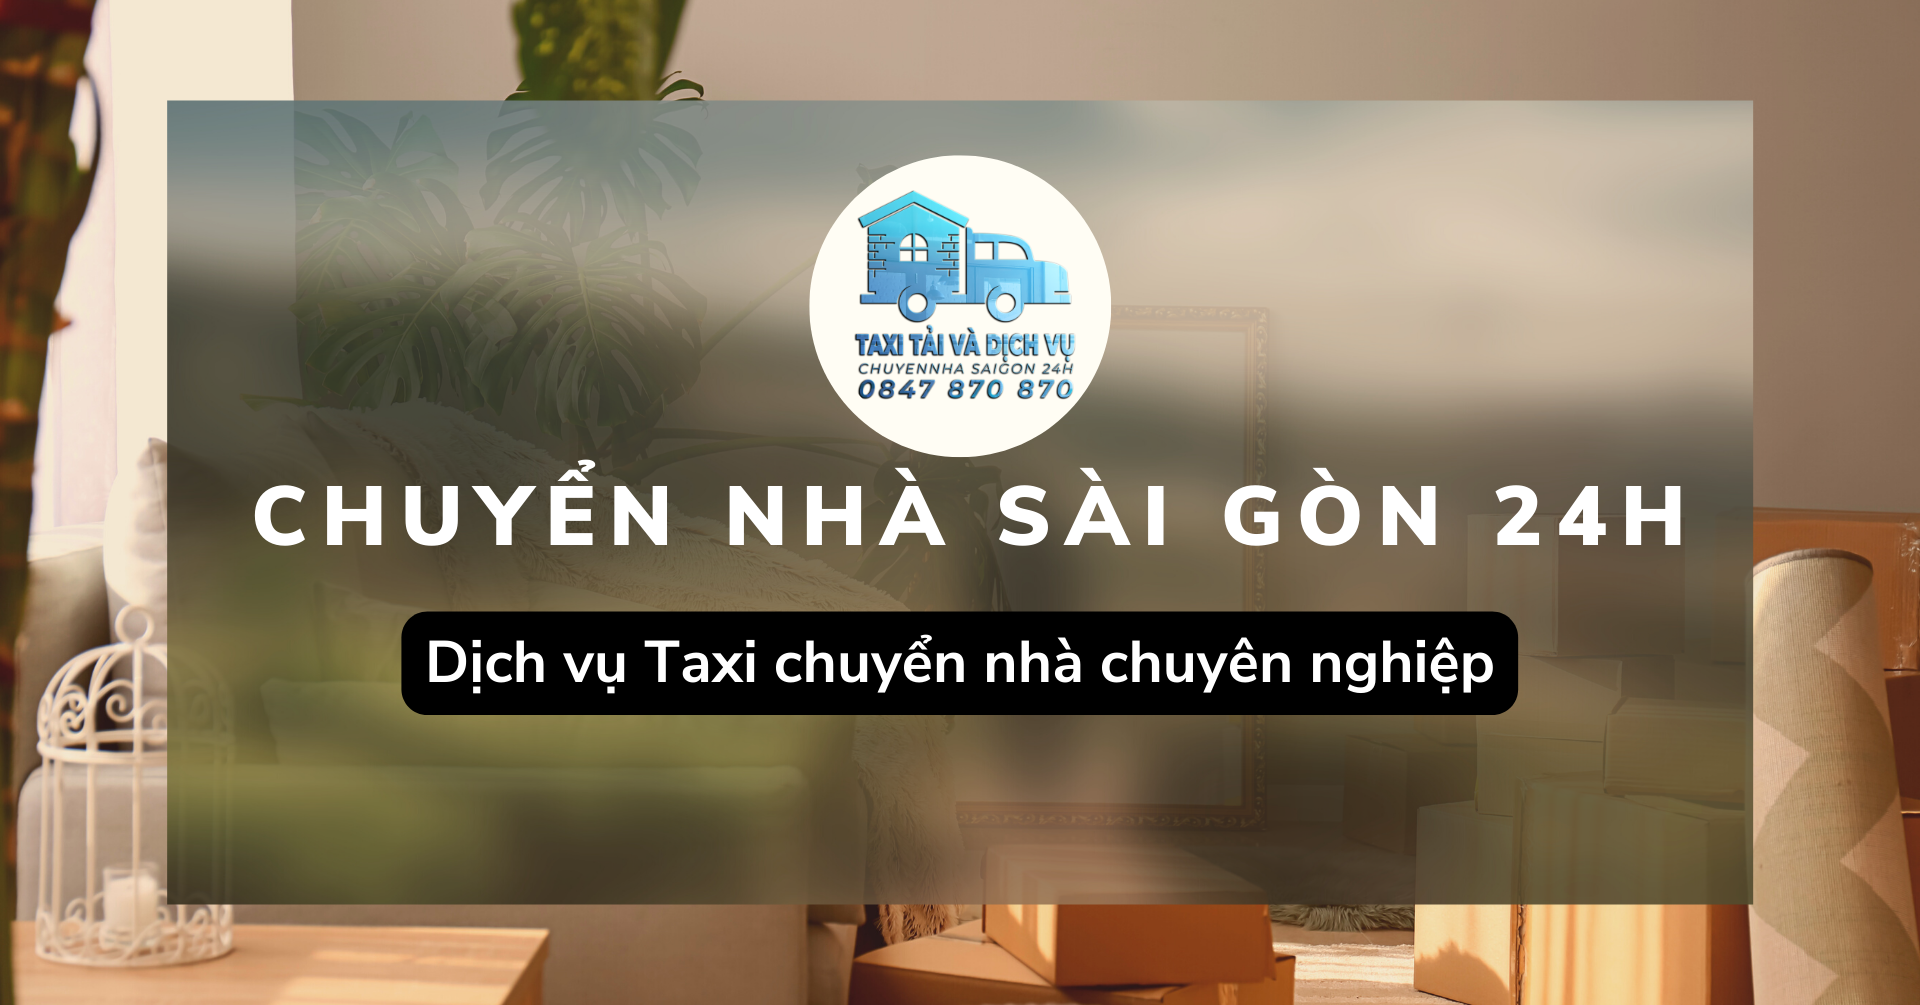 Dịch vụ Taxi chuyển nhà chuyên nghiệp-Cam kết không phát sinh chi phí | Dịch Vụ Chuyển Nhà Sài Gòn 24H